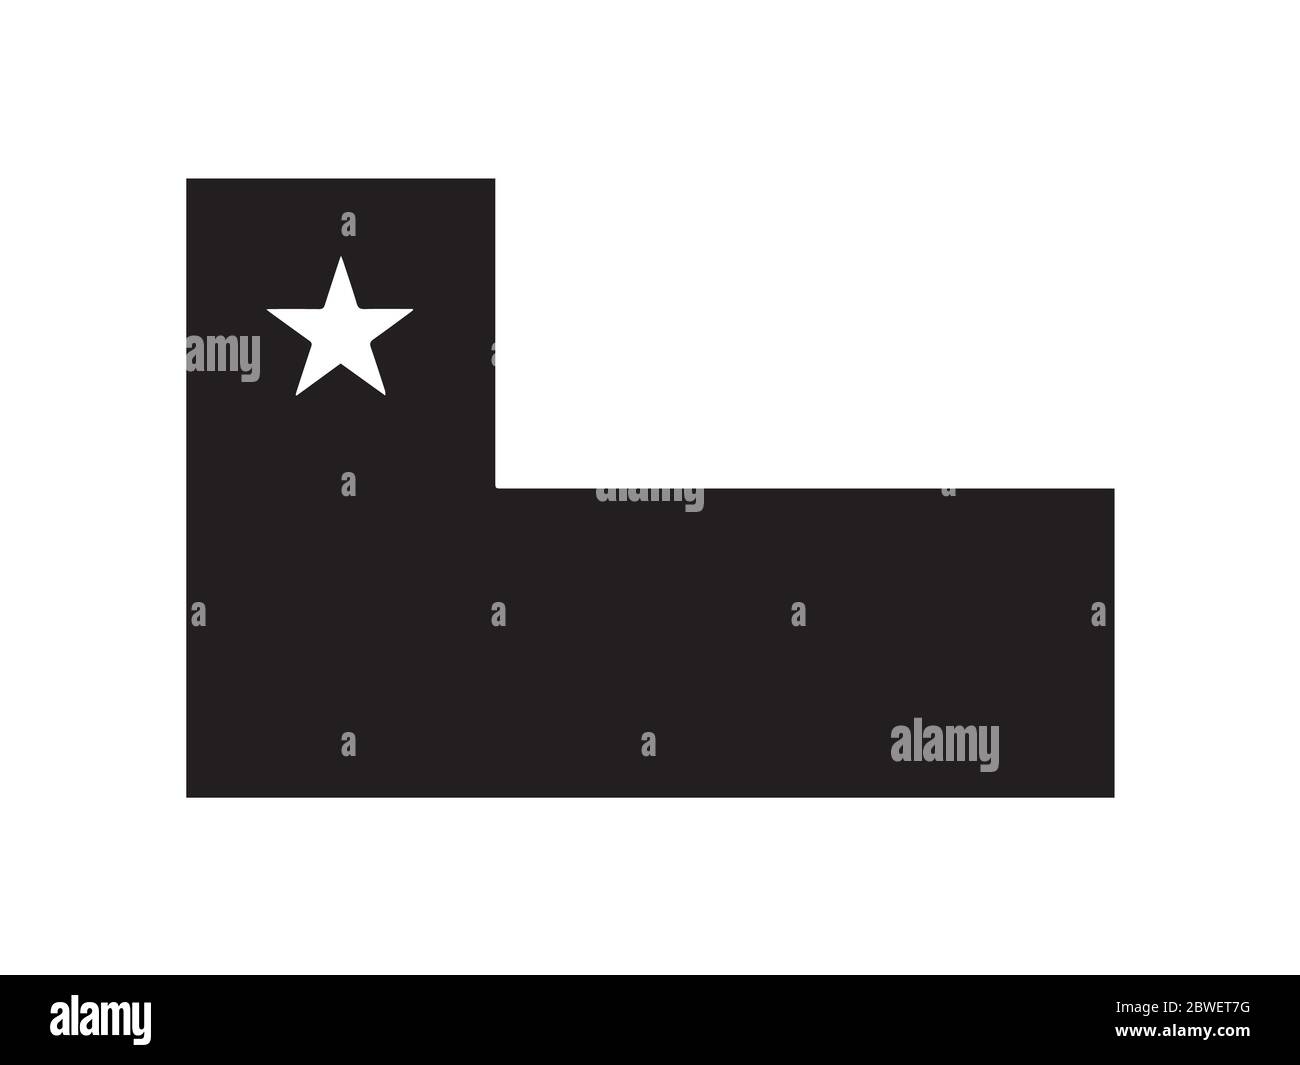 Chile Bandera Negro y Blanco. Bandera nacional del emblema del país. Archivo vectorial EPS en escala de grises monocromo. Ilustración del Vector